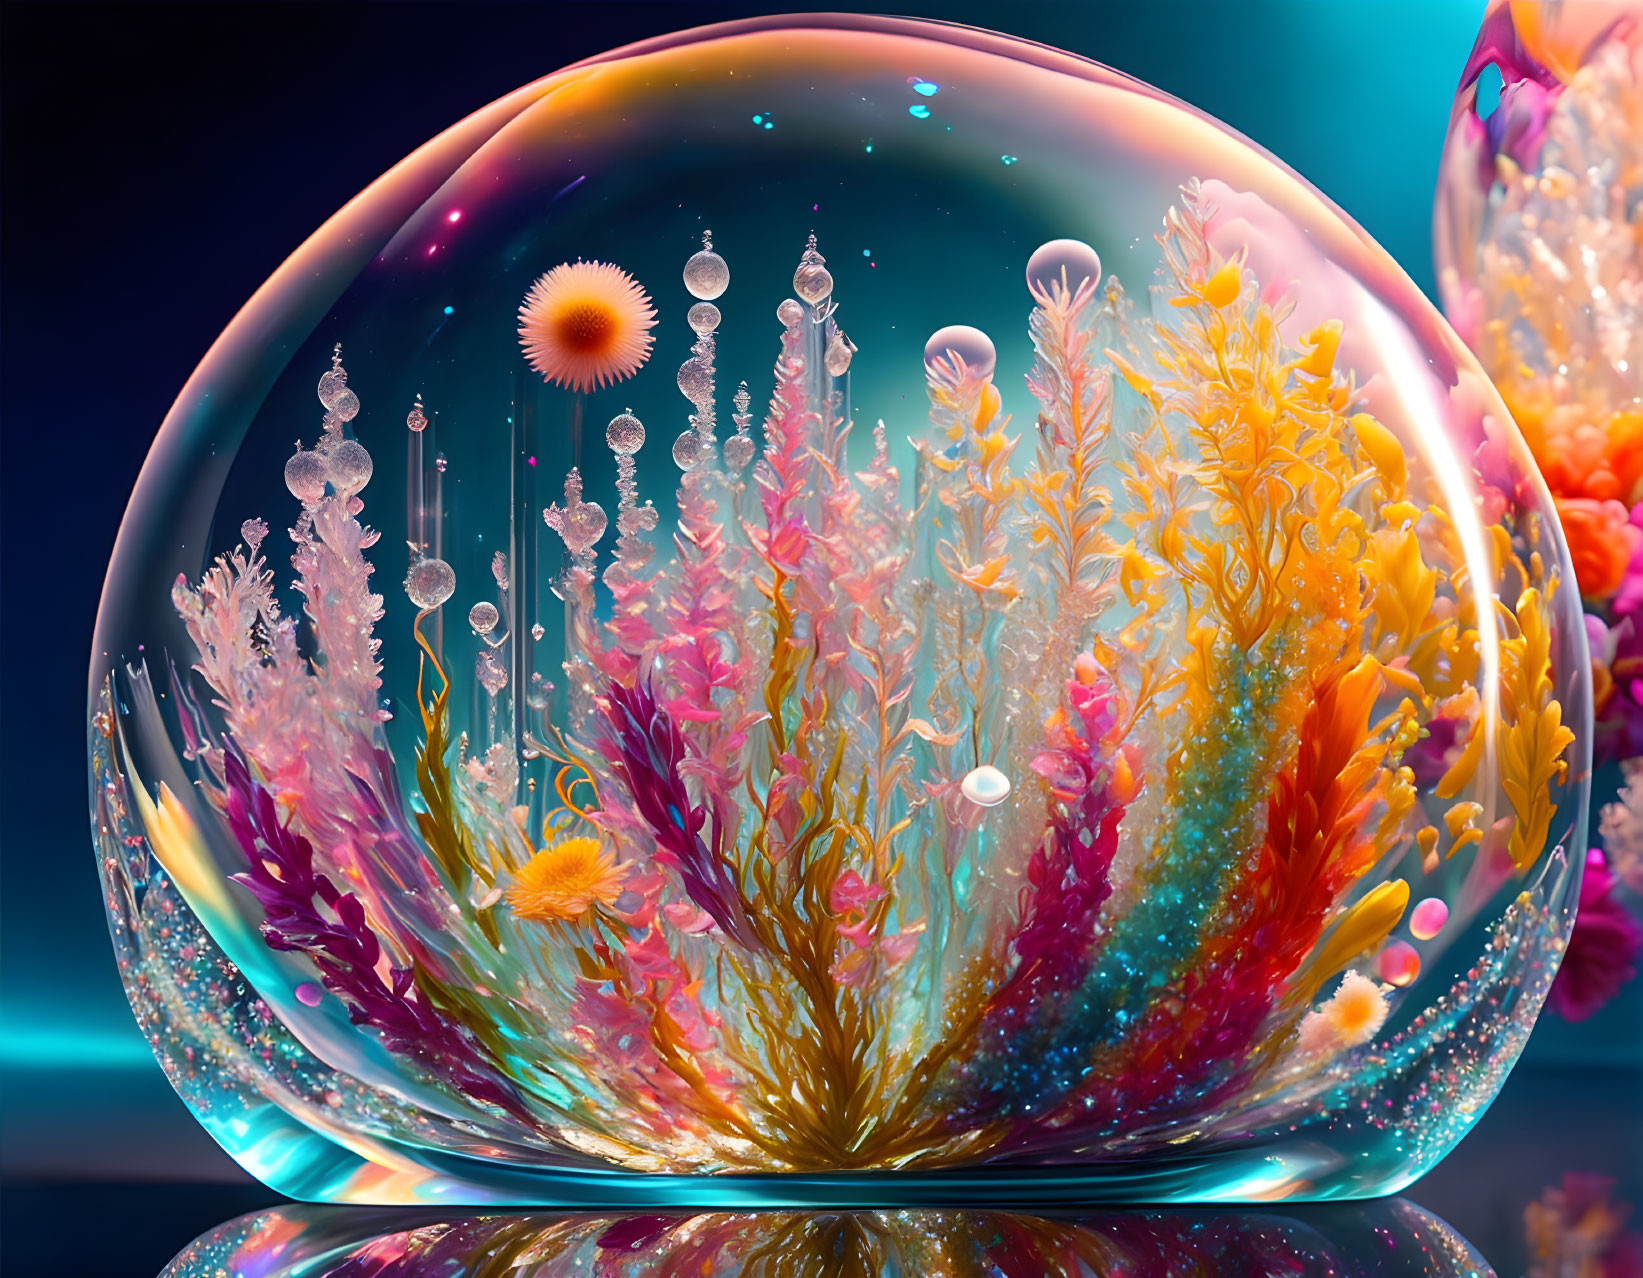 Bubble micro ecosystem